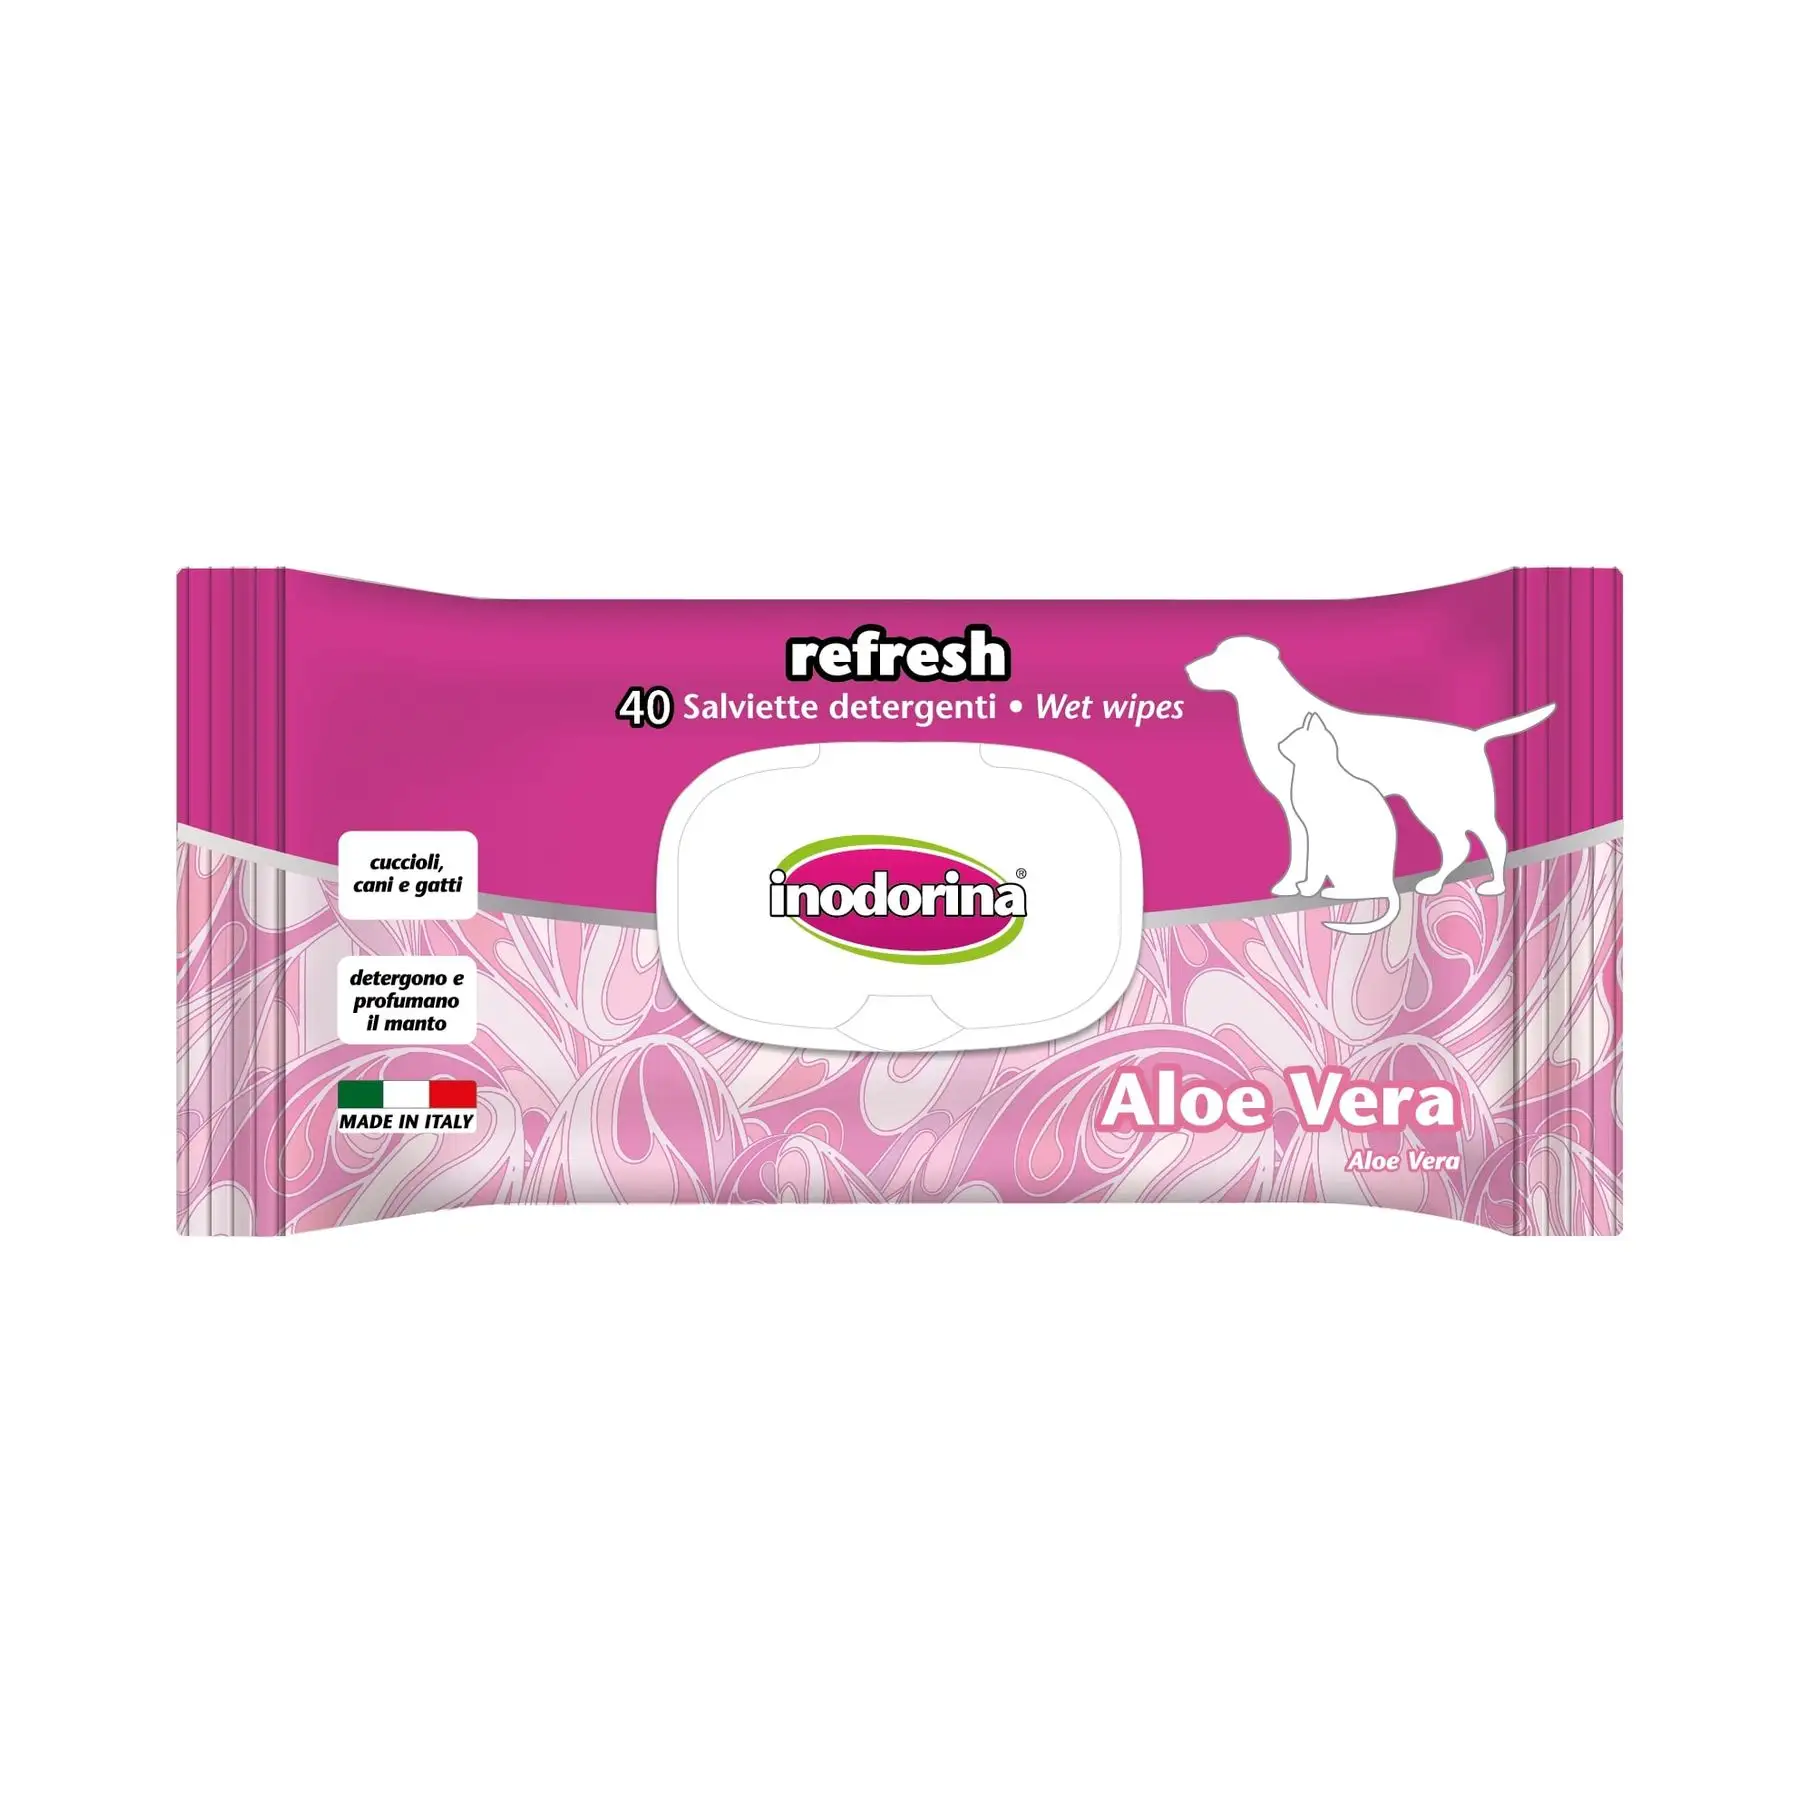 Üst Inodorina yenileme Aloe Vera Pet mendil-nemlendirici formülü 40 adet-kediler, köpekler, yavru kedi ve yavruların nazik bakımı için